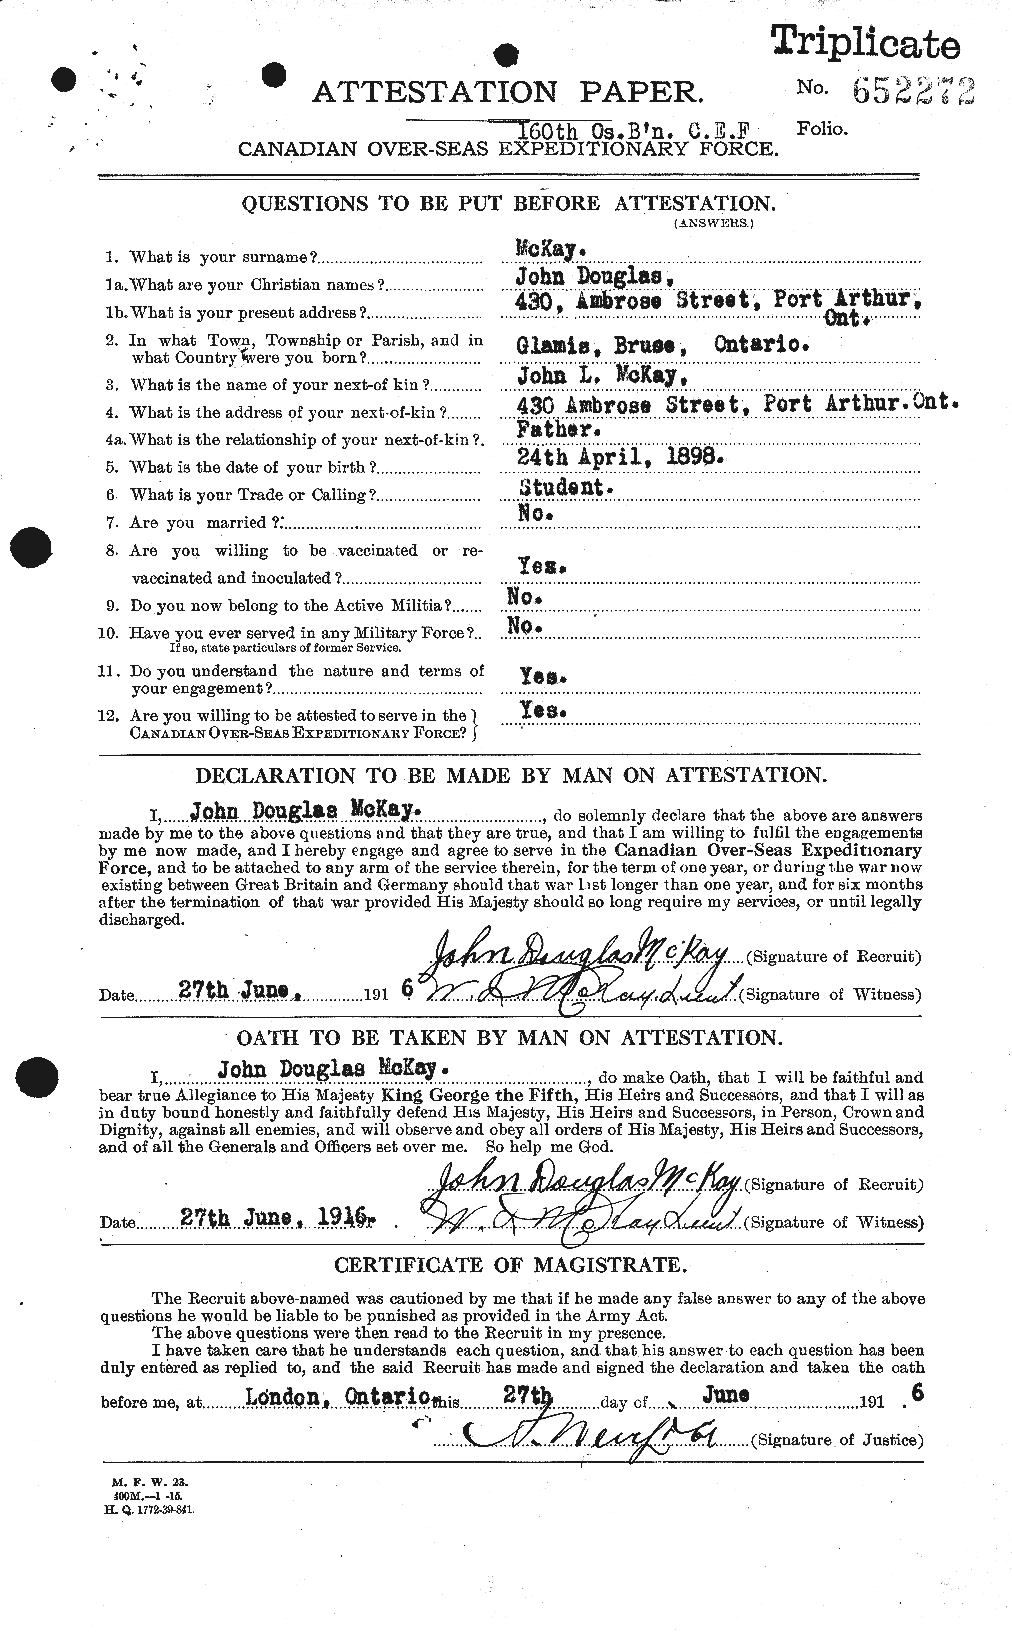 Dossiers du Personnel de la Première Guerre mondiale - CEC 527044a